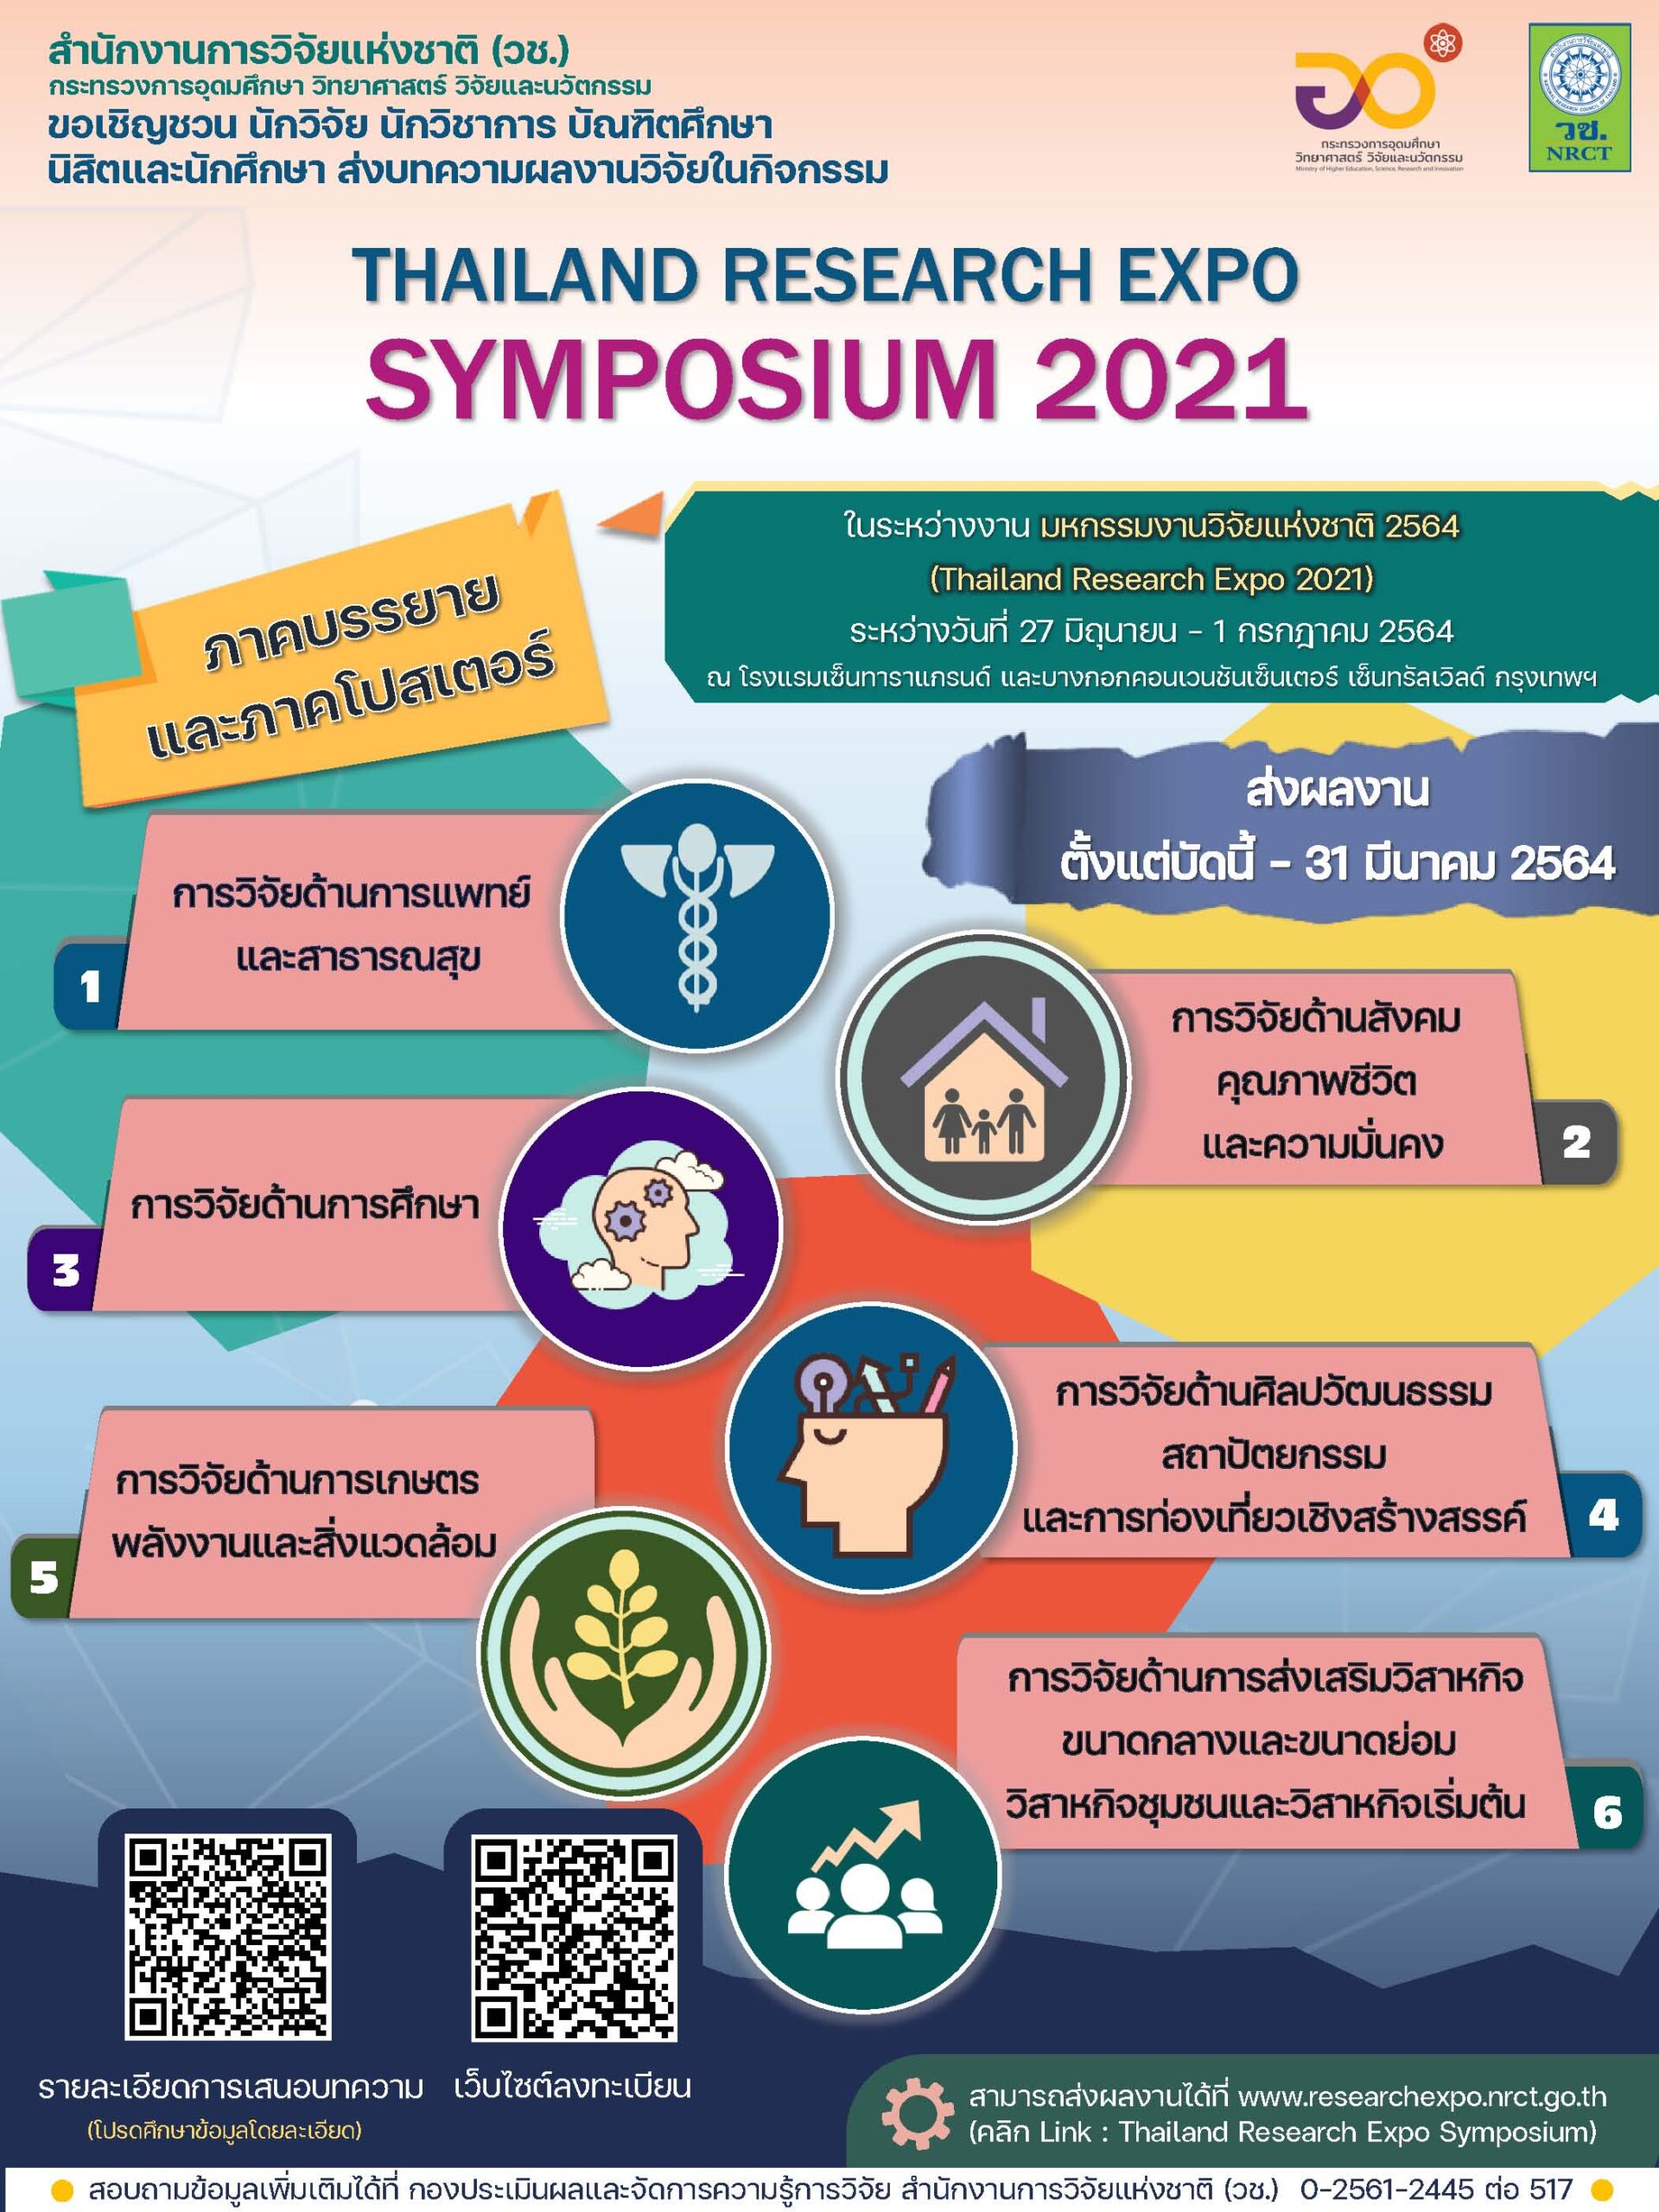 ประชาสัมพันธ์เชิญชวนส่งผลงานเข้าร่วมนำเสนอในกิจกรรม Thailand Research Expo: Symposium 2020